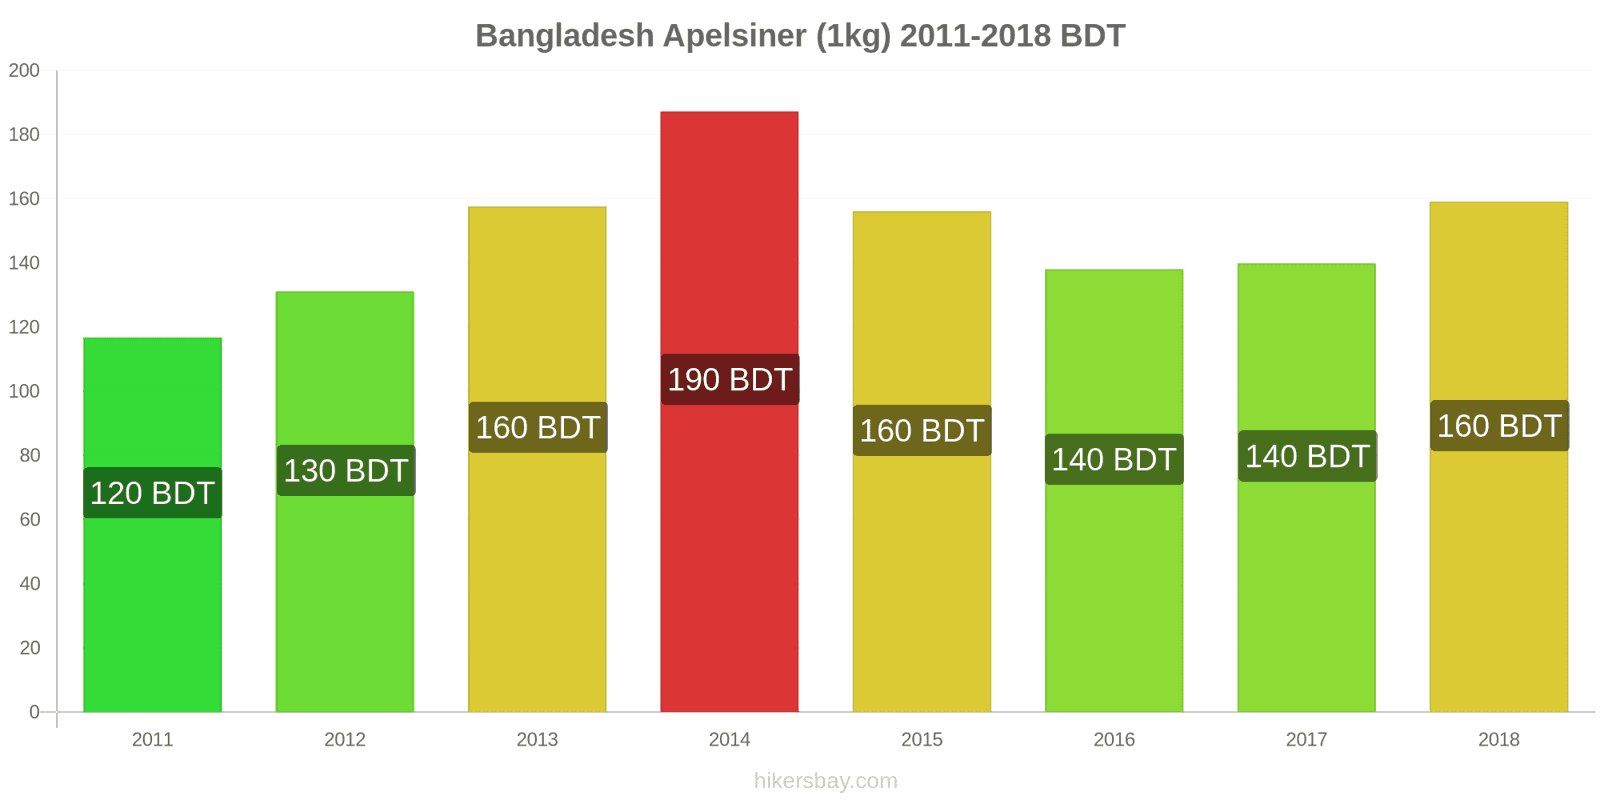 Bangladesh prisändringar Apelsiner (1kg) hikersbay.com